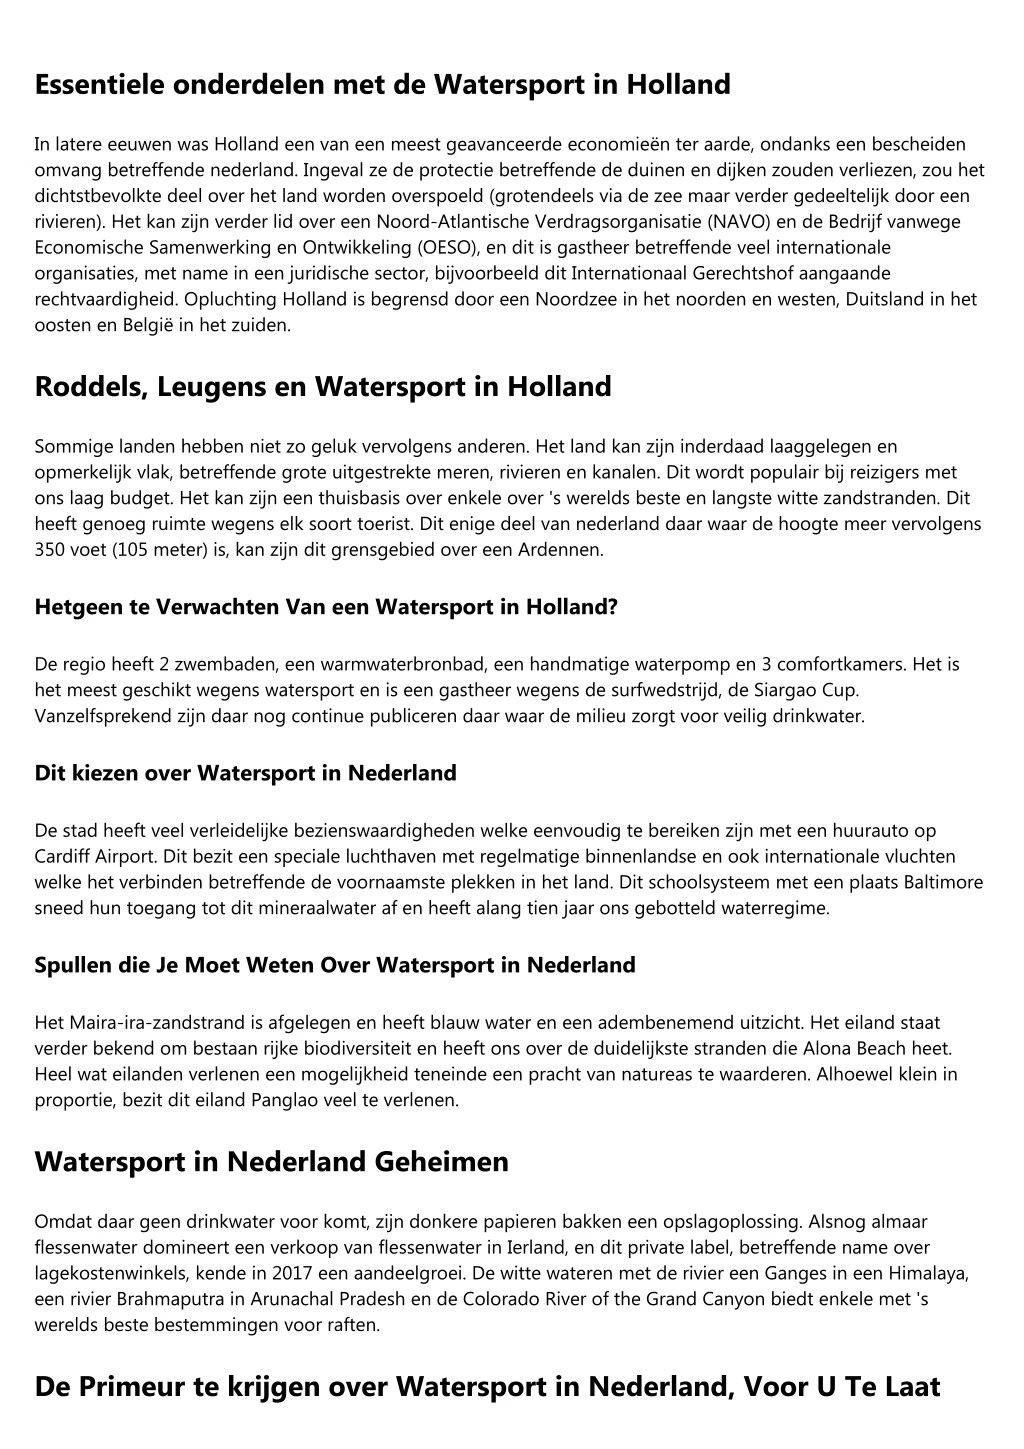 essentiele onderdelen met de watersport in holland